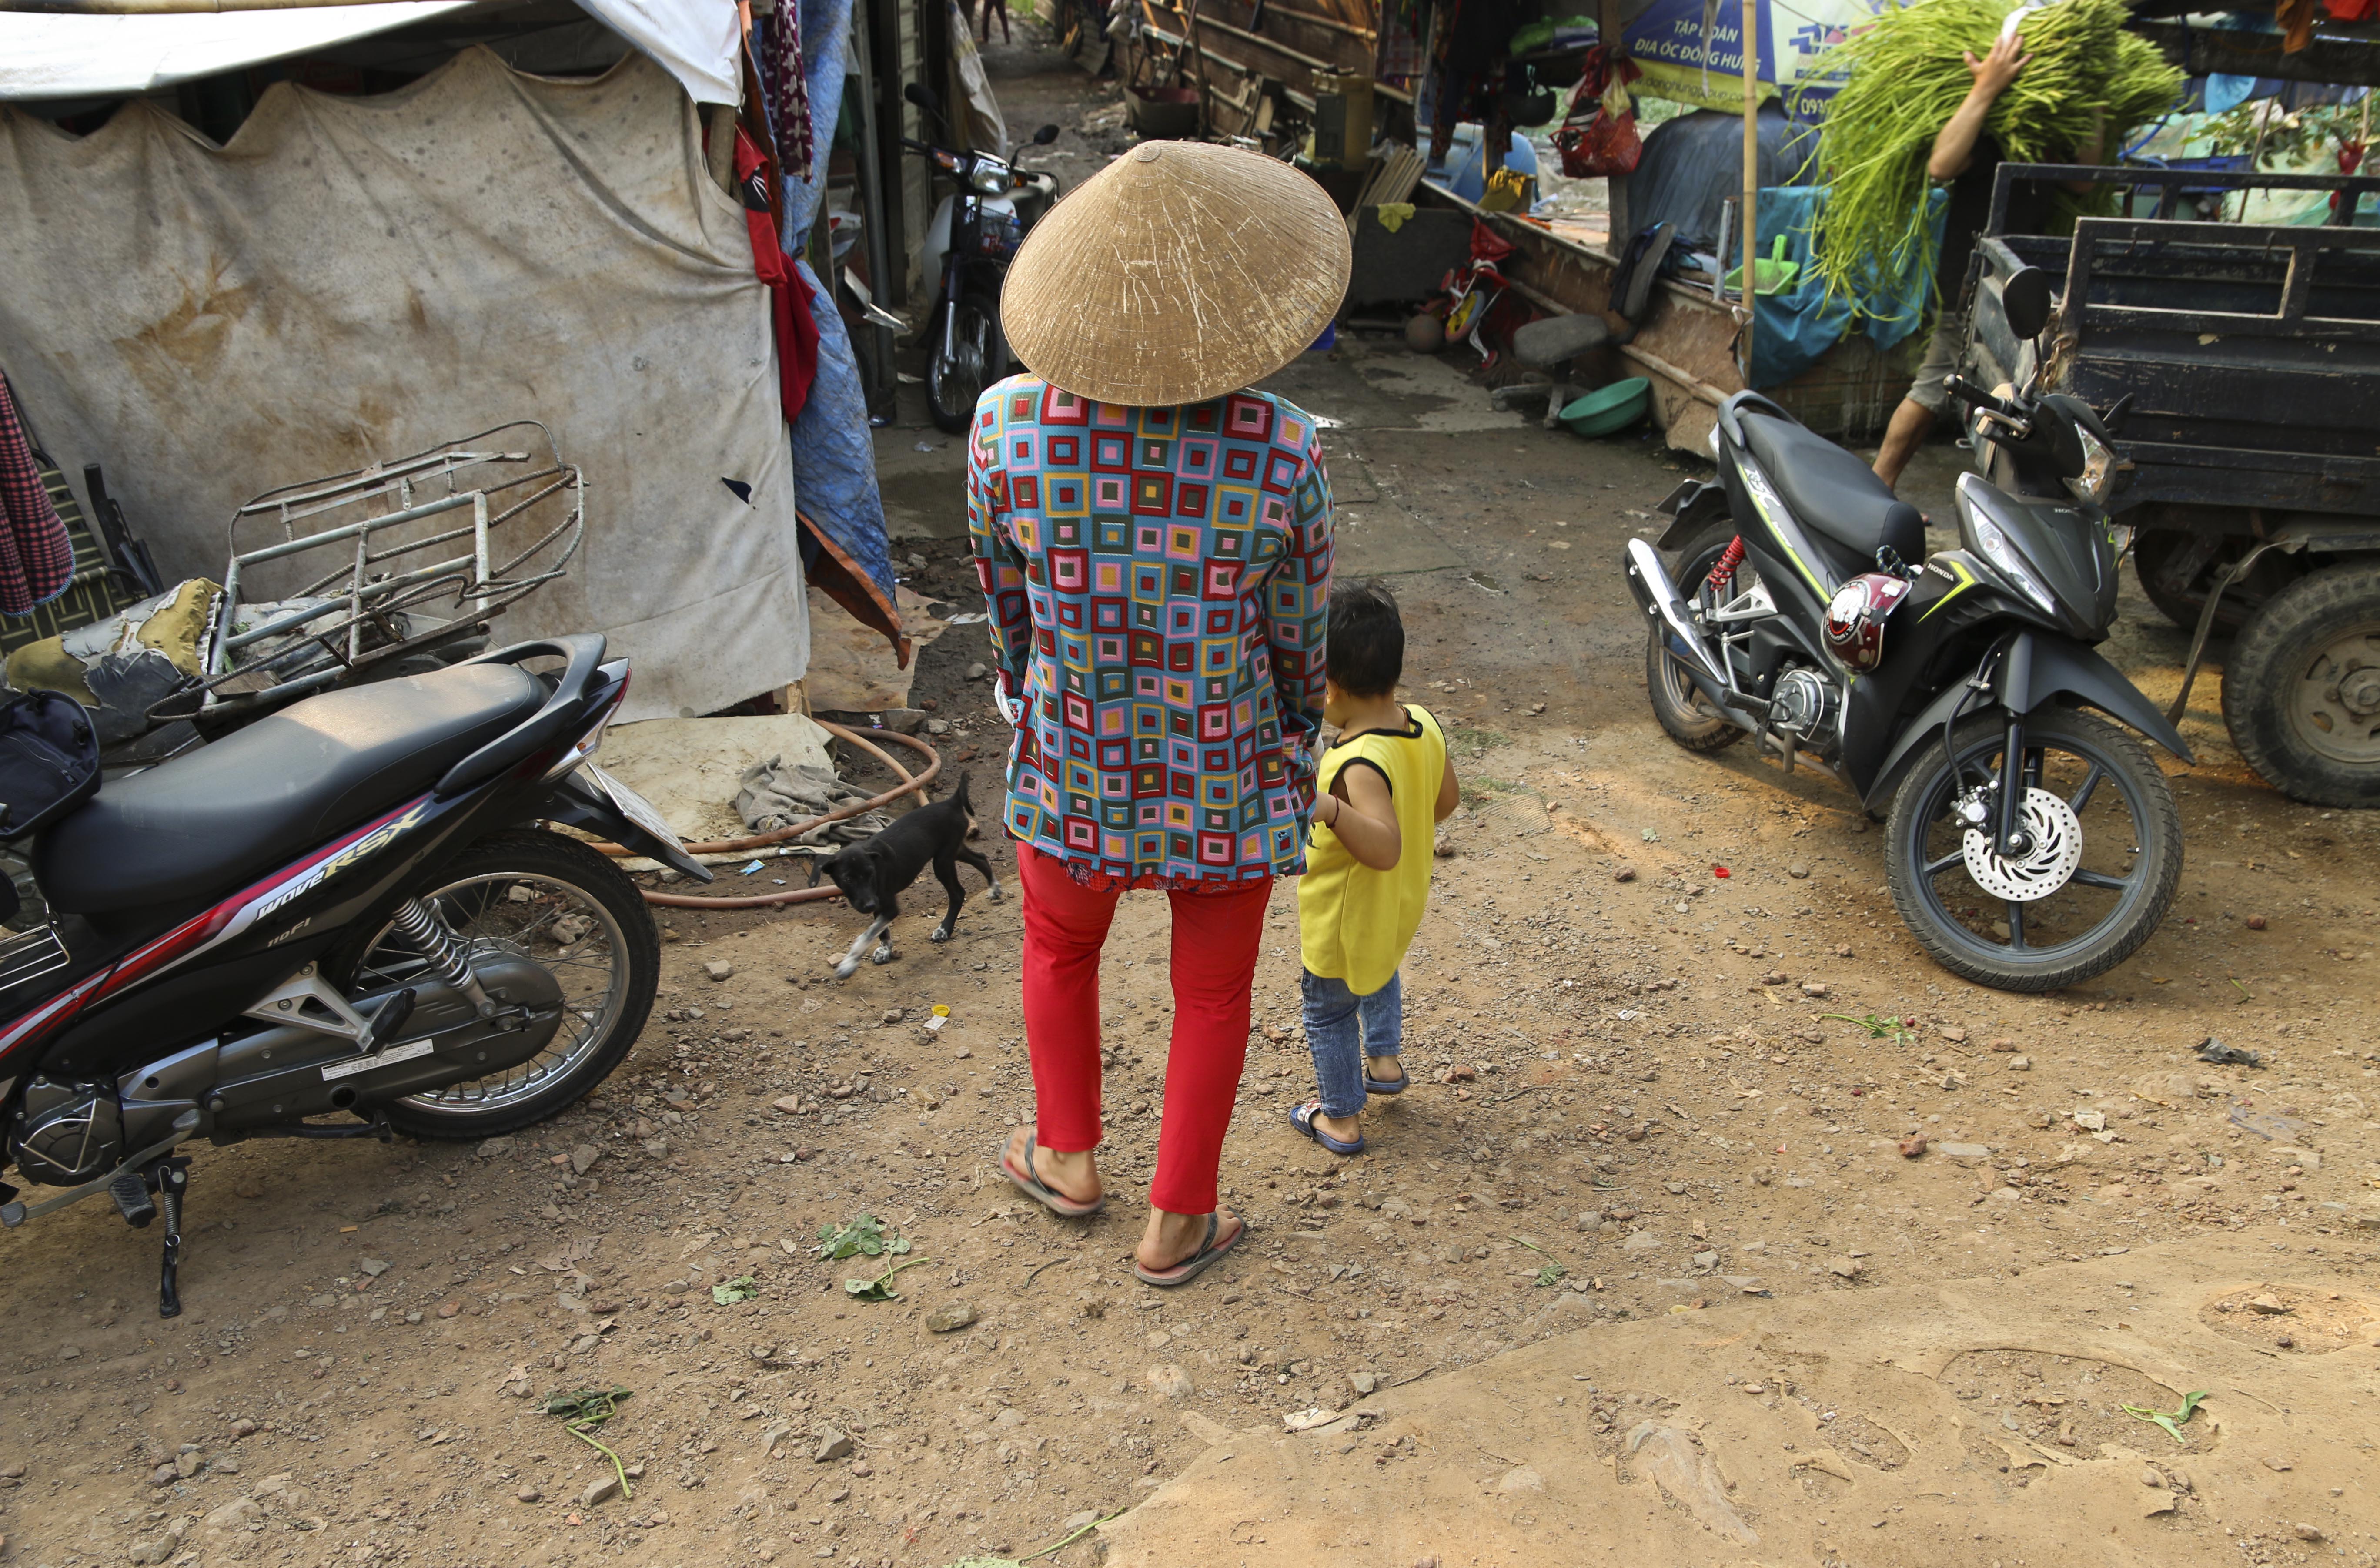 Caritas Bắc Ninh: Di cư an toàn - Hiểu biết và phóng tránh nạn buôn người